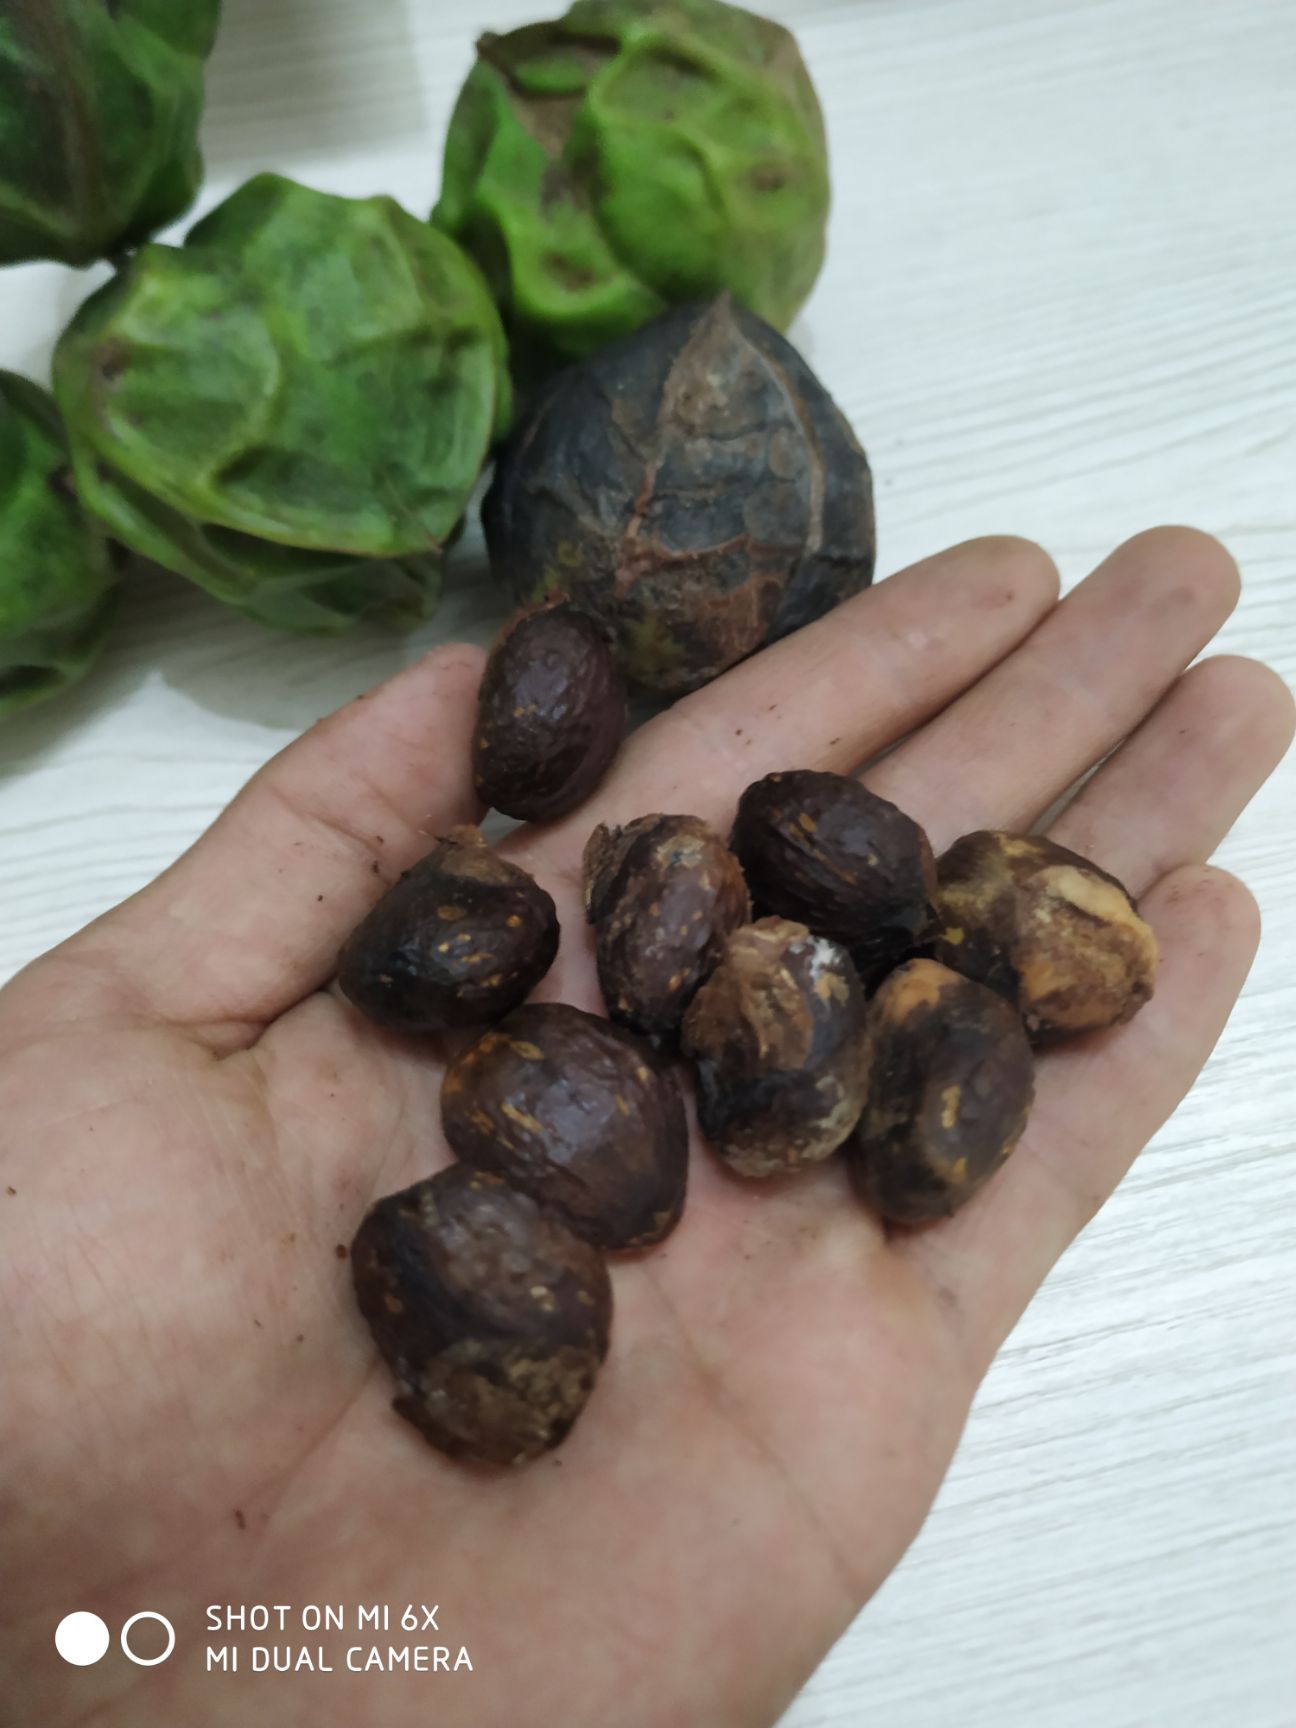 [桐籽批发] *生木油桐籽价格2.5元/斤 - 惠农网